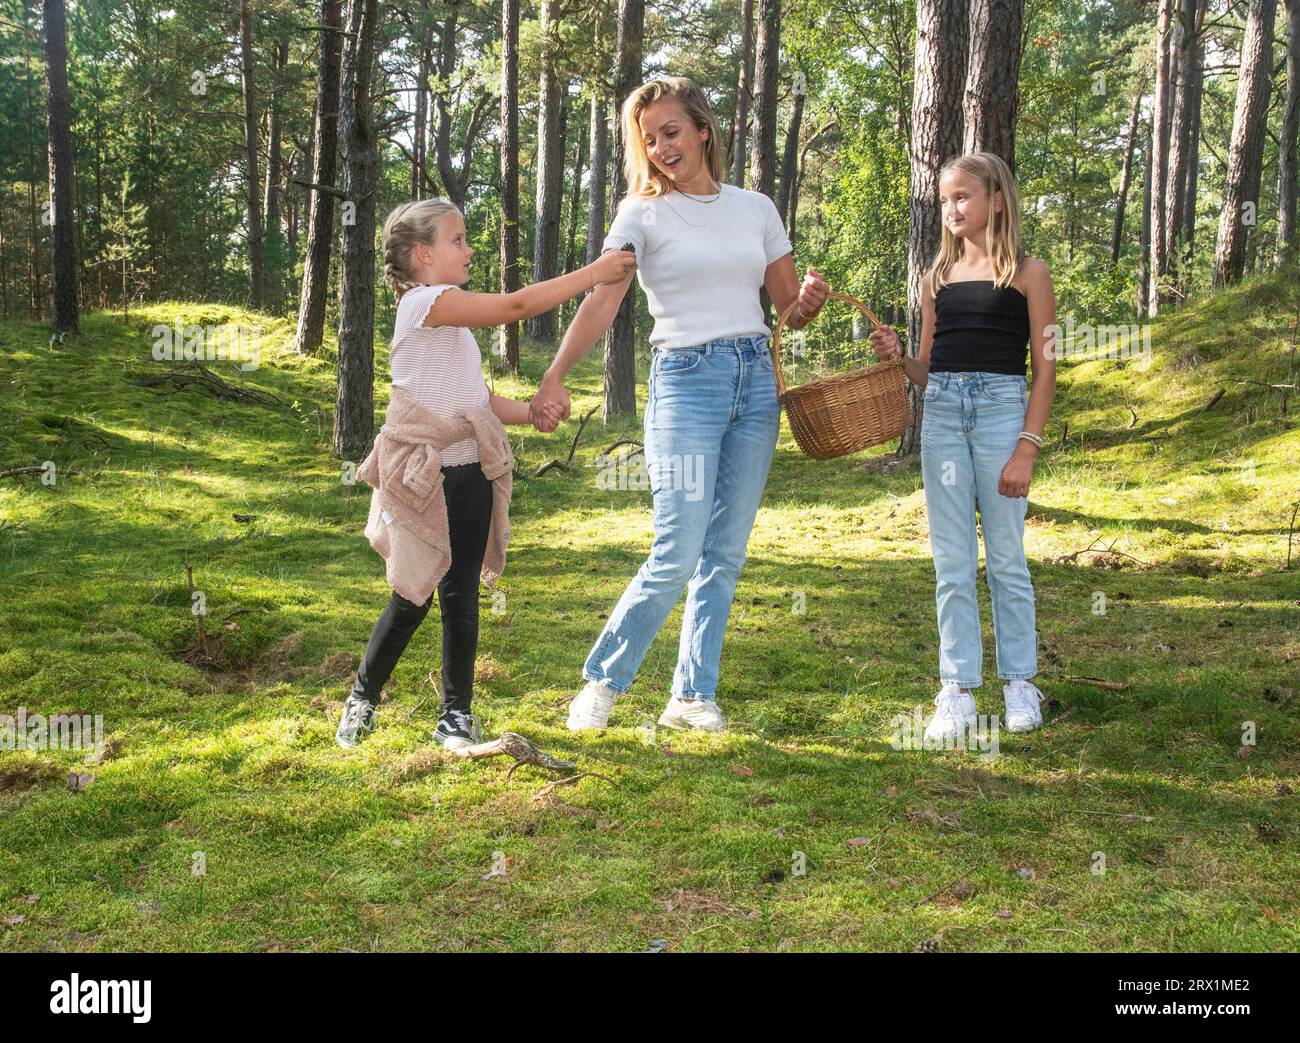 Donna bionda con due ragazze, 7 e 10 anni, alla ricerca di funghi nella foresta di Ystad, Scania, Svezia, Scandinavia Foto Stock